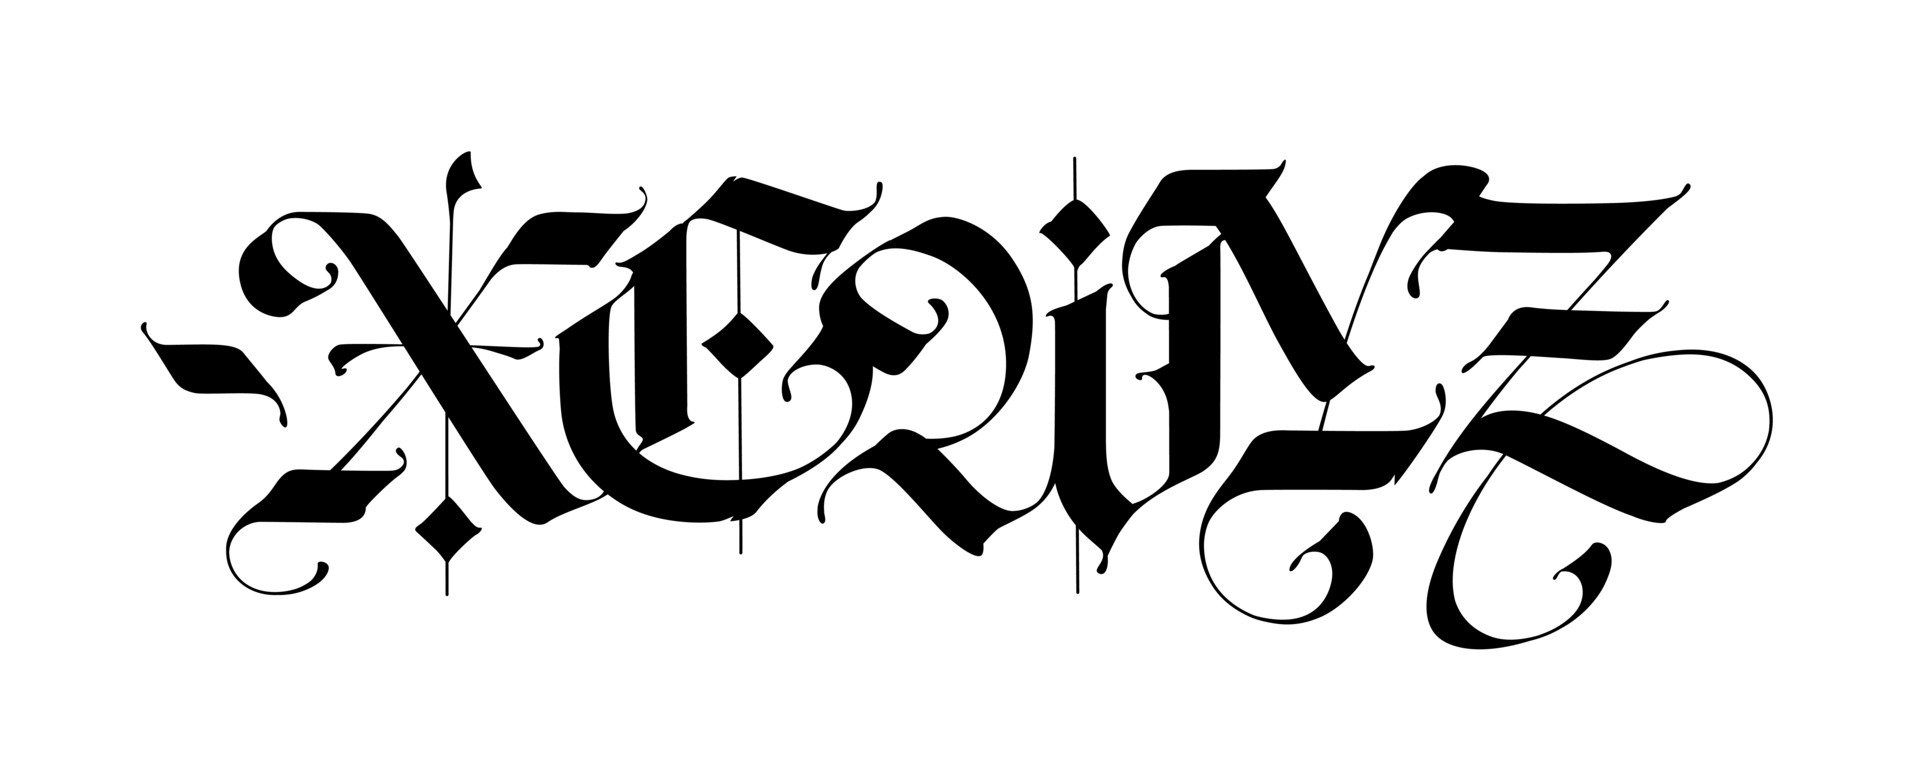 40 Best Old English Fonts Blackletter Gothic  Vandelay Design